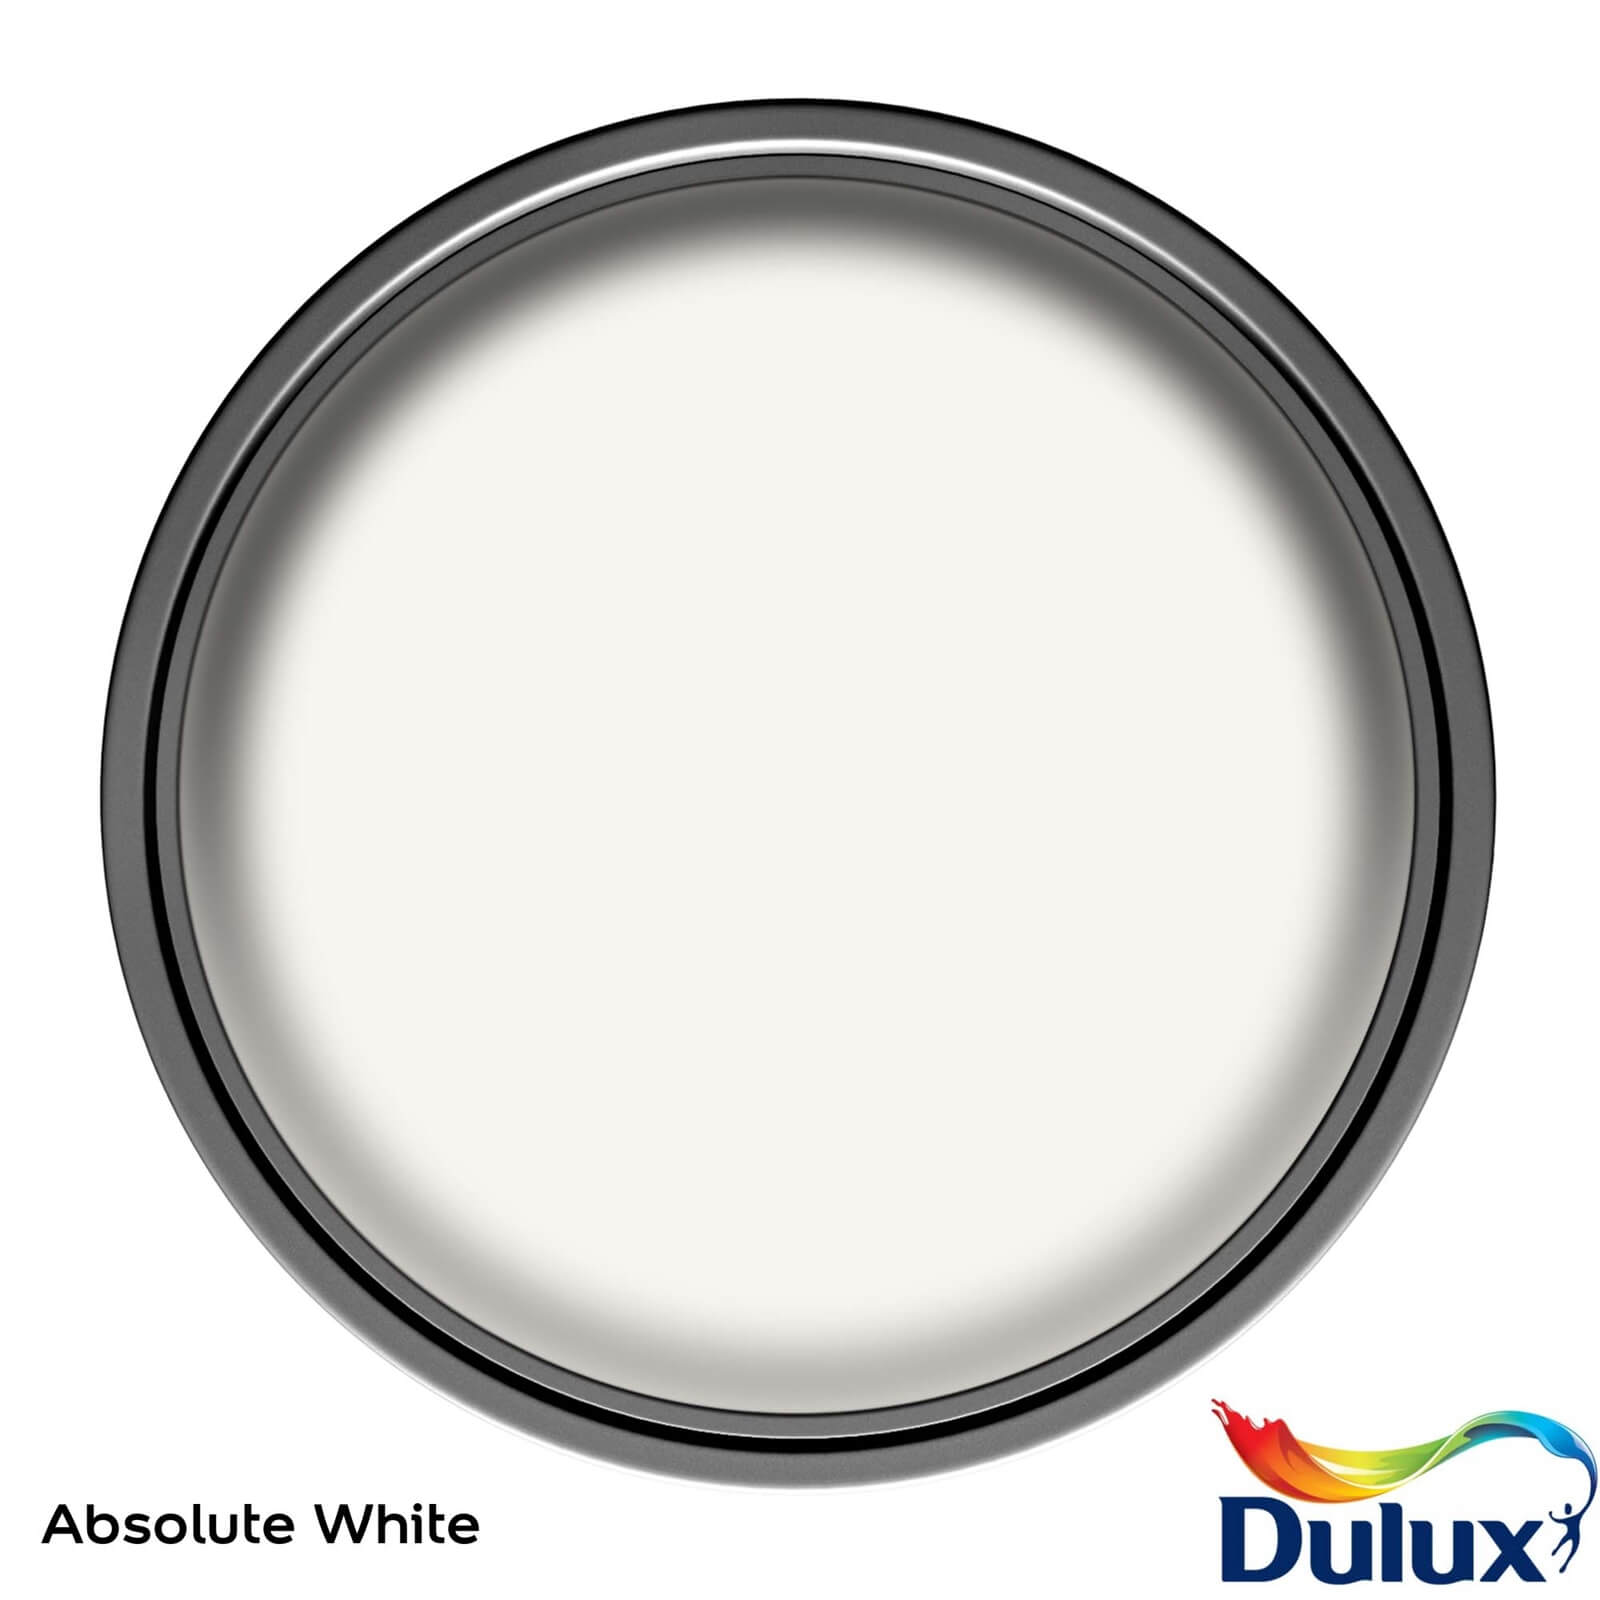 Dulux Light & Space Matt Emulsion Paint Absolute White - 2.5L